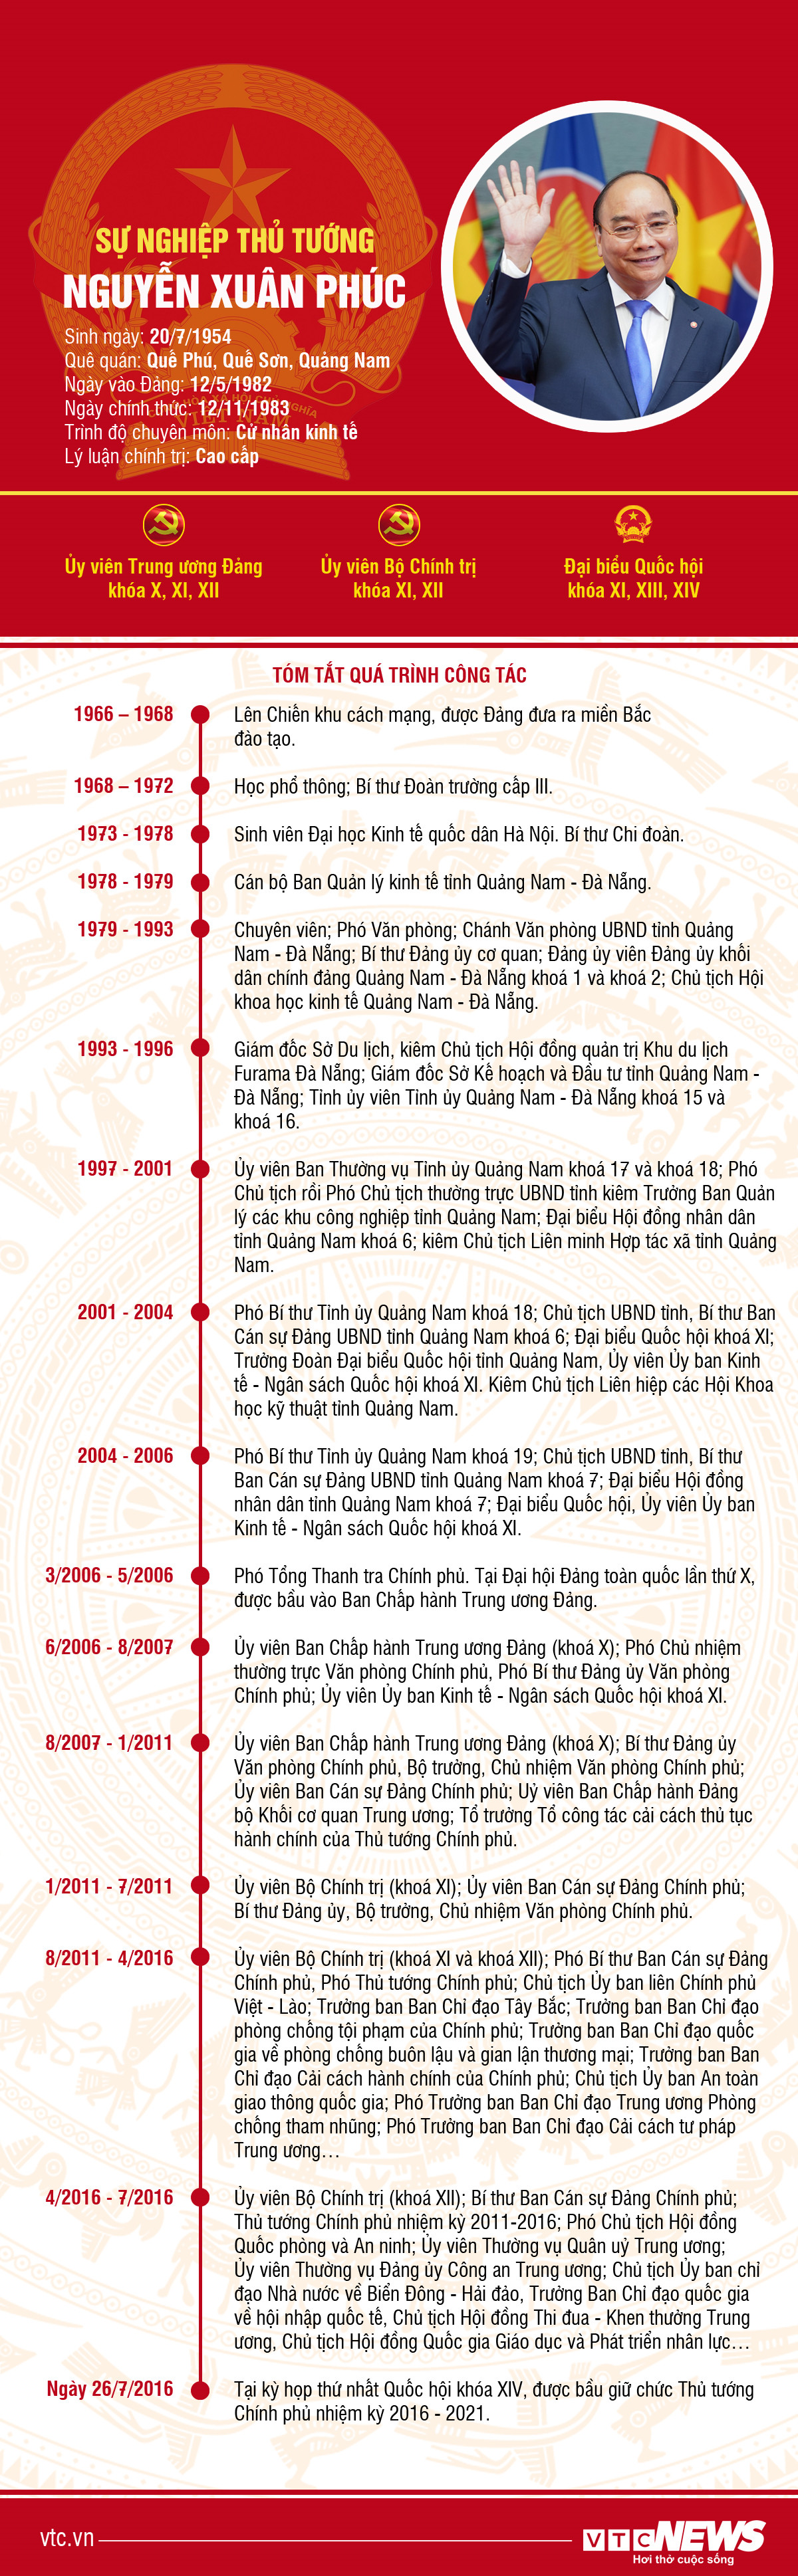 Infographic: Sự nghiệp Thủ tướng Nguyễn Xuân Phúc - 1